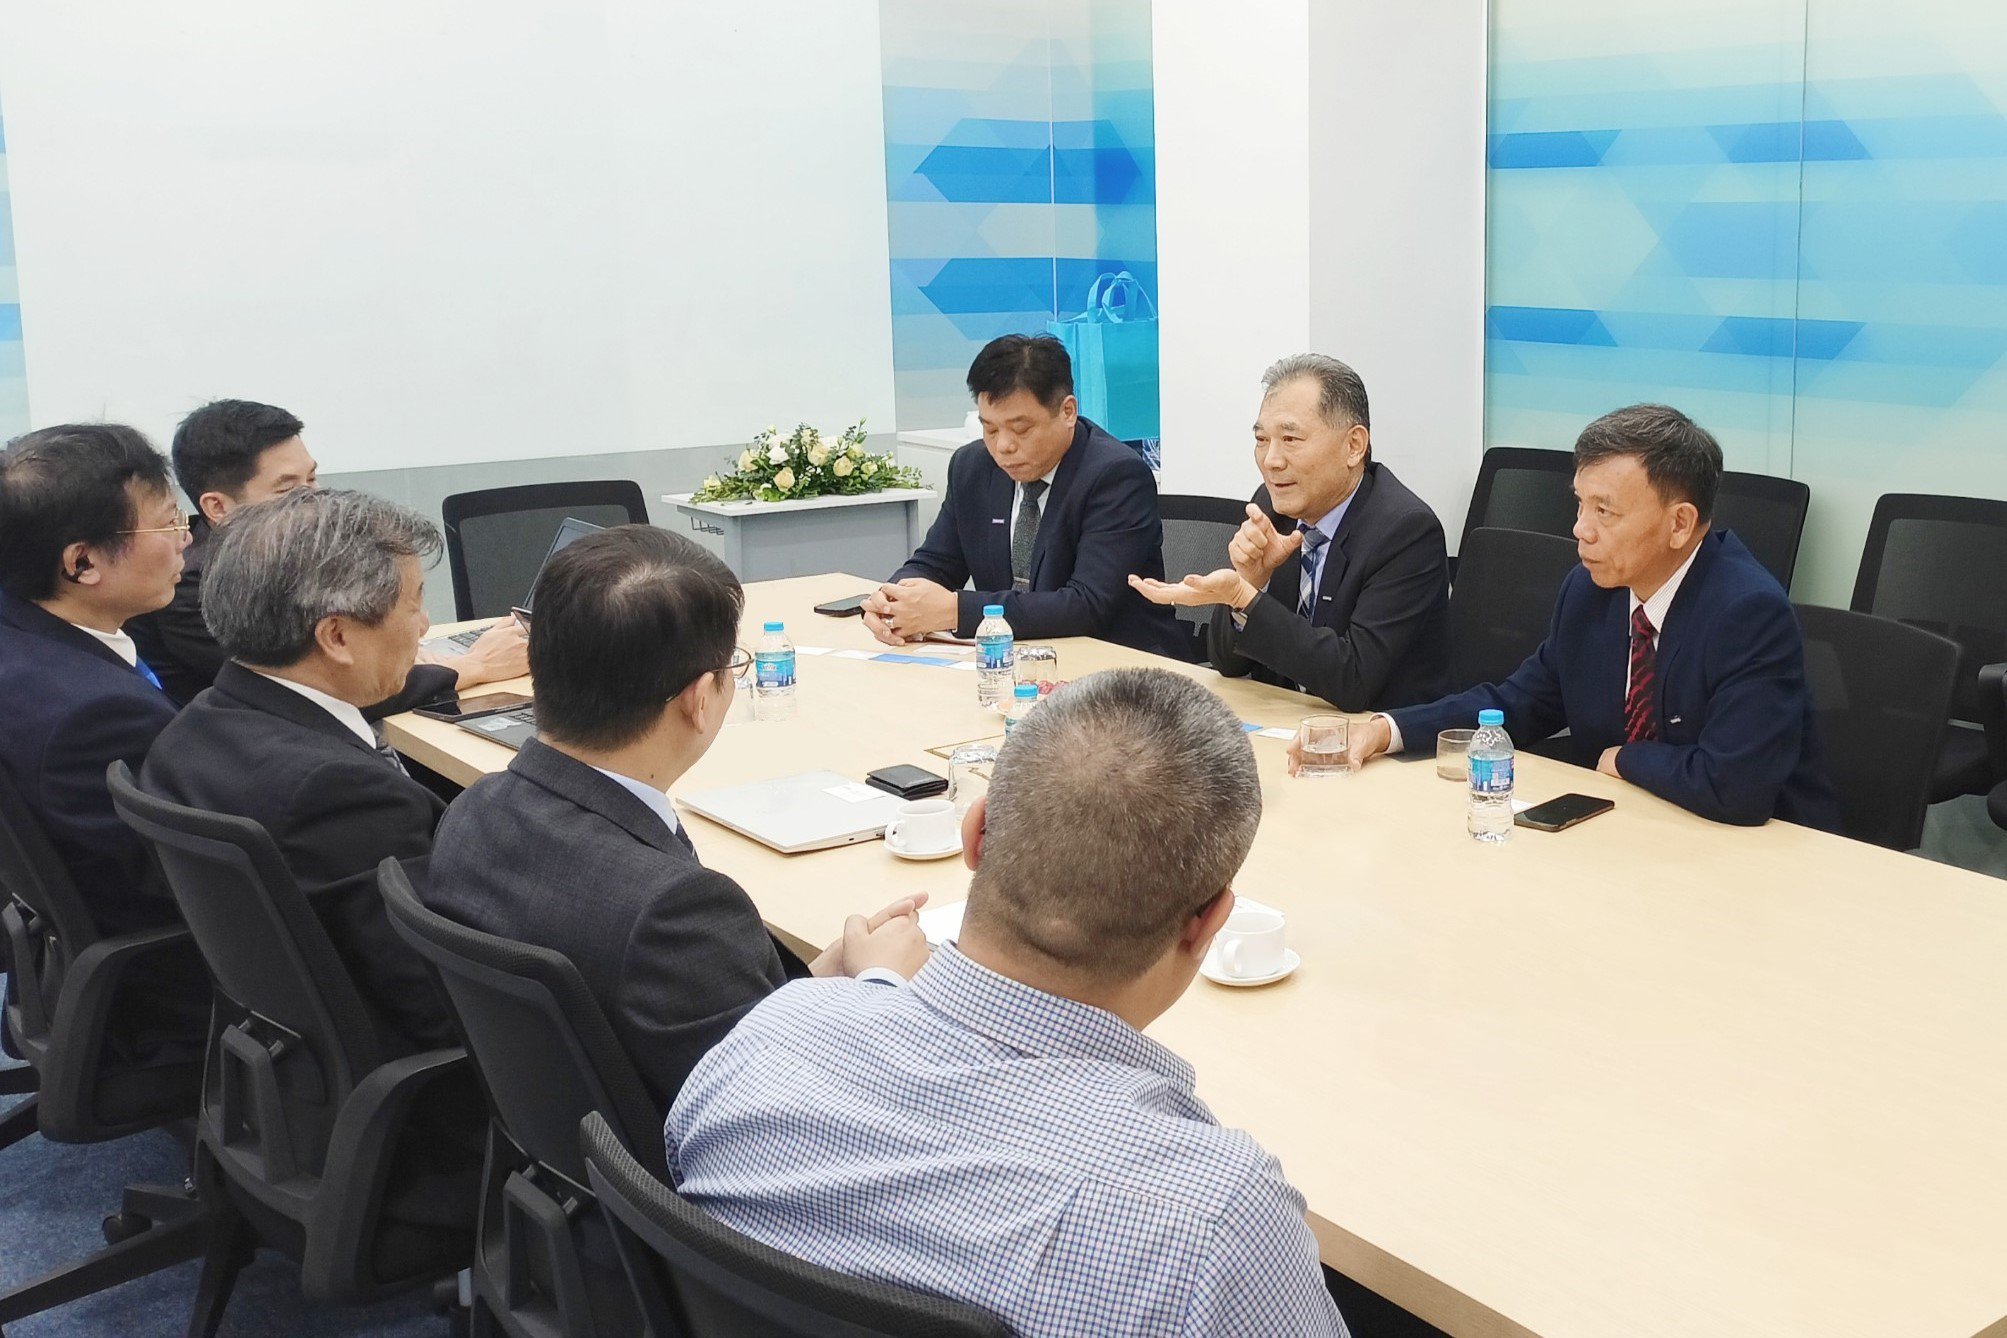 TS. Robert Li – Phó Chủ tịch Synopsys khu vực Đài Loan và Đông Á (ở giữa) trong buổi làm việc với trường Đại học CMC